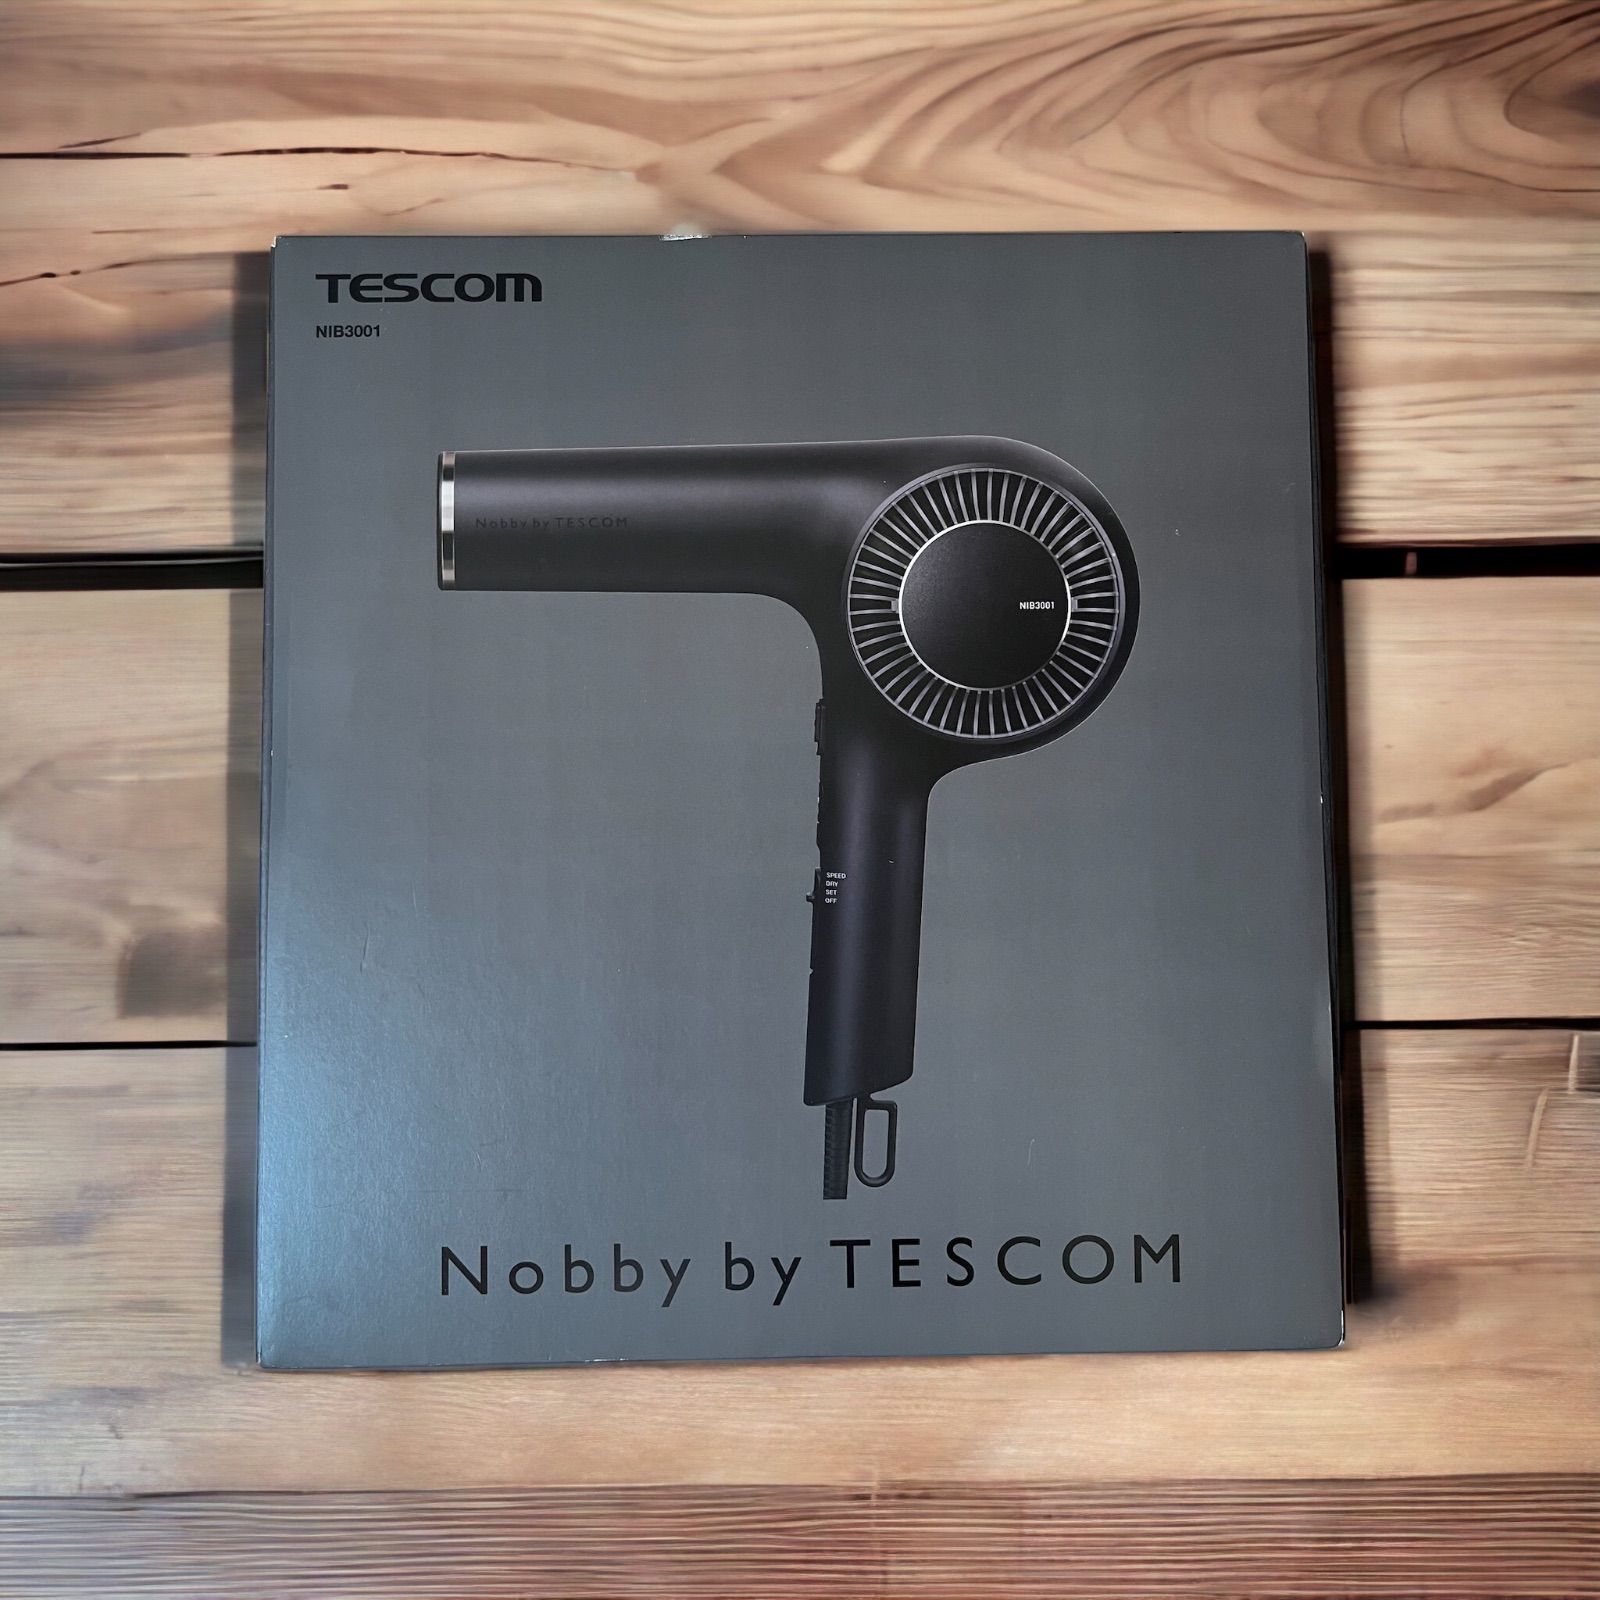 新品未開封 テスコム TESCOM NIB3001 K プロテクトイオンヘアー